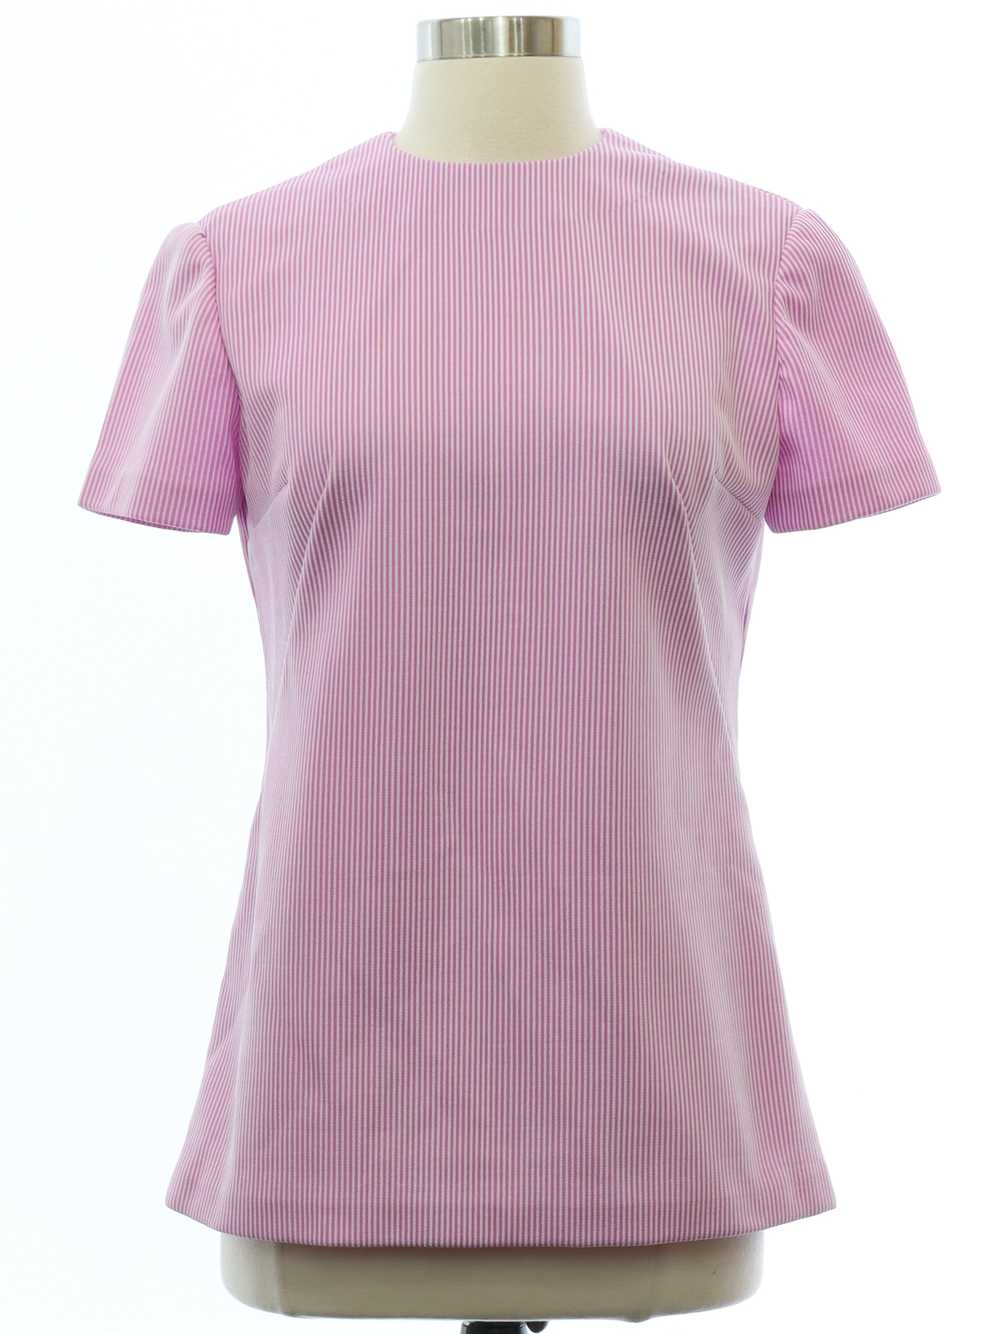 1960's Womens Mod Knit Shirt - image 1